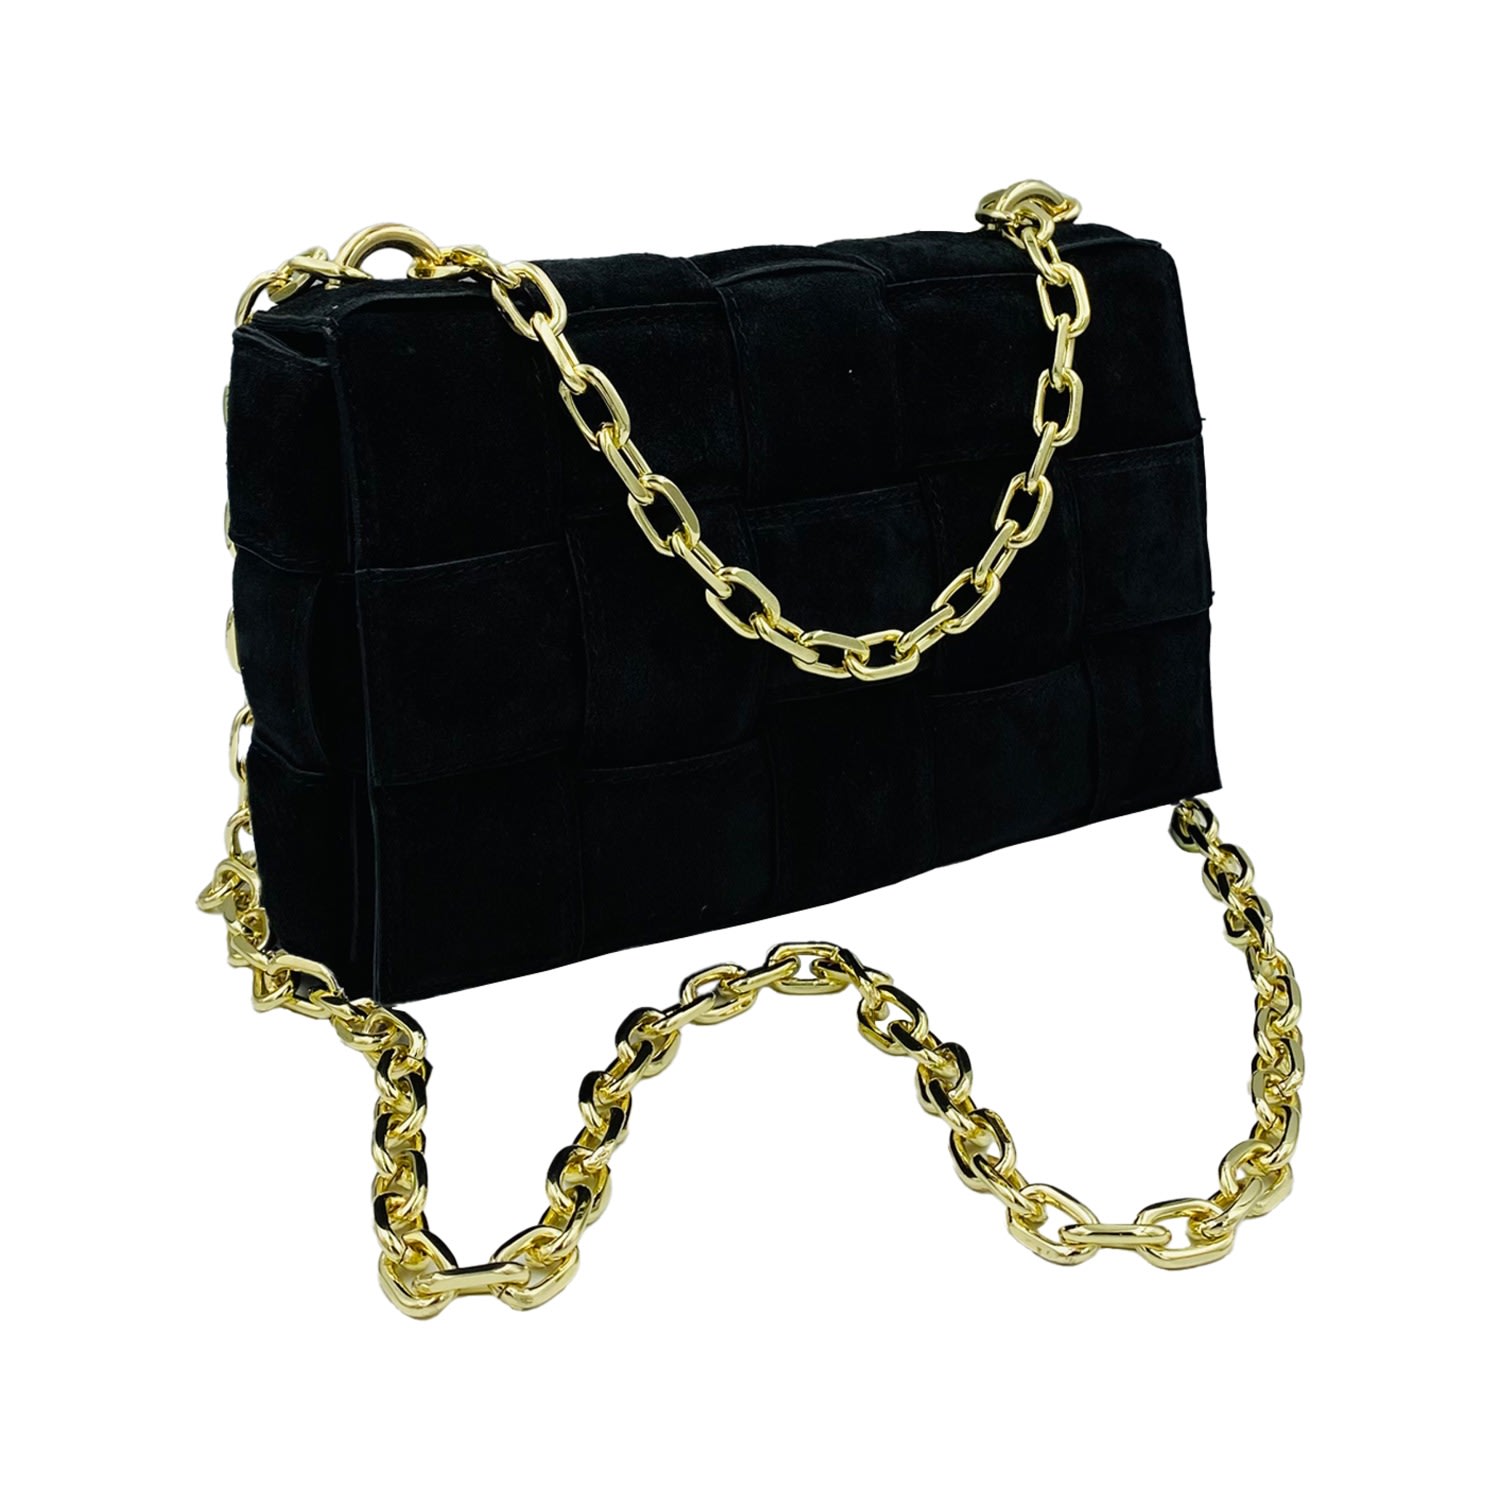 Women’s Braided Suede Handbag Black One Size Angelika Jozefczyk